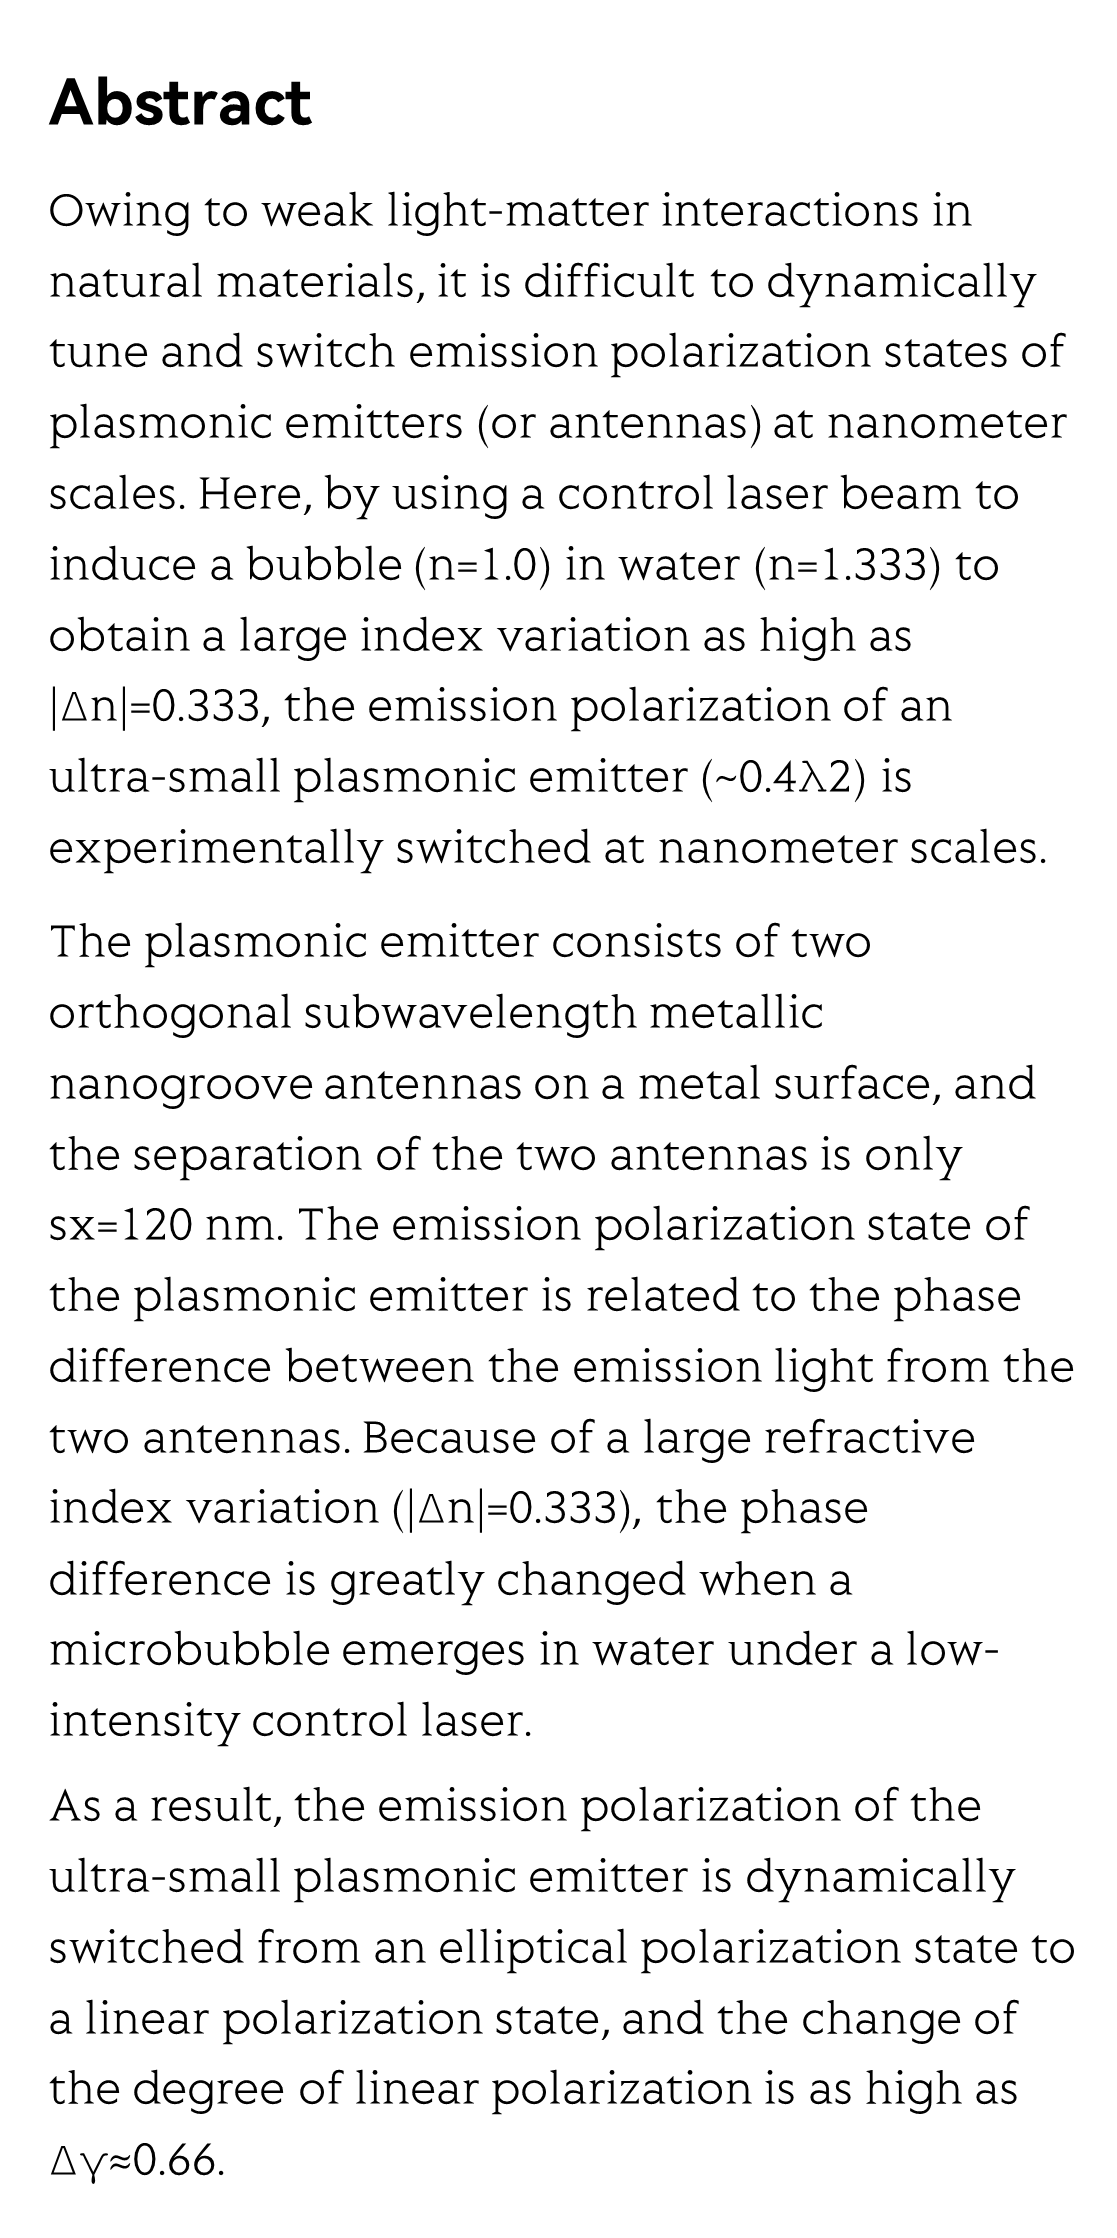 Polarization-switchable plasmonic emitters based on laser-induced bubbles_2